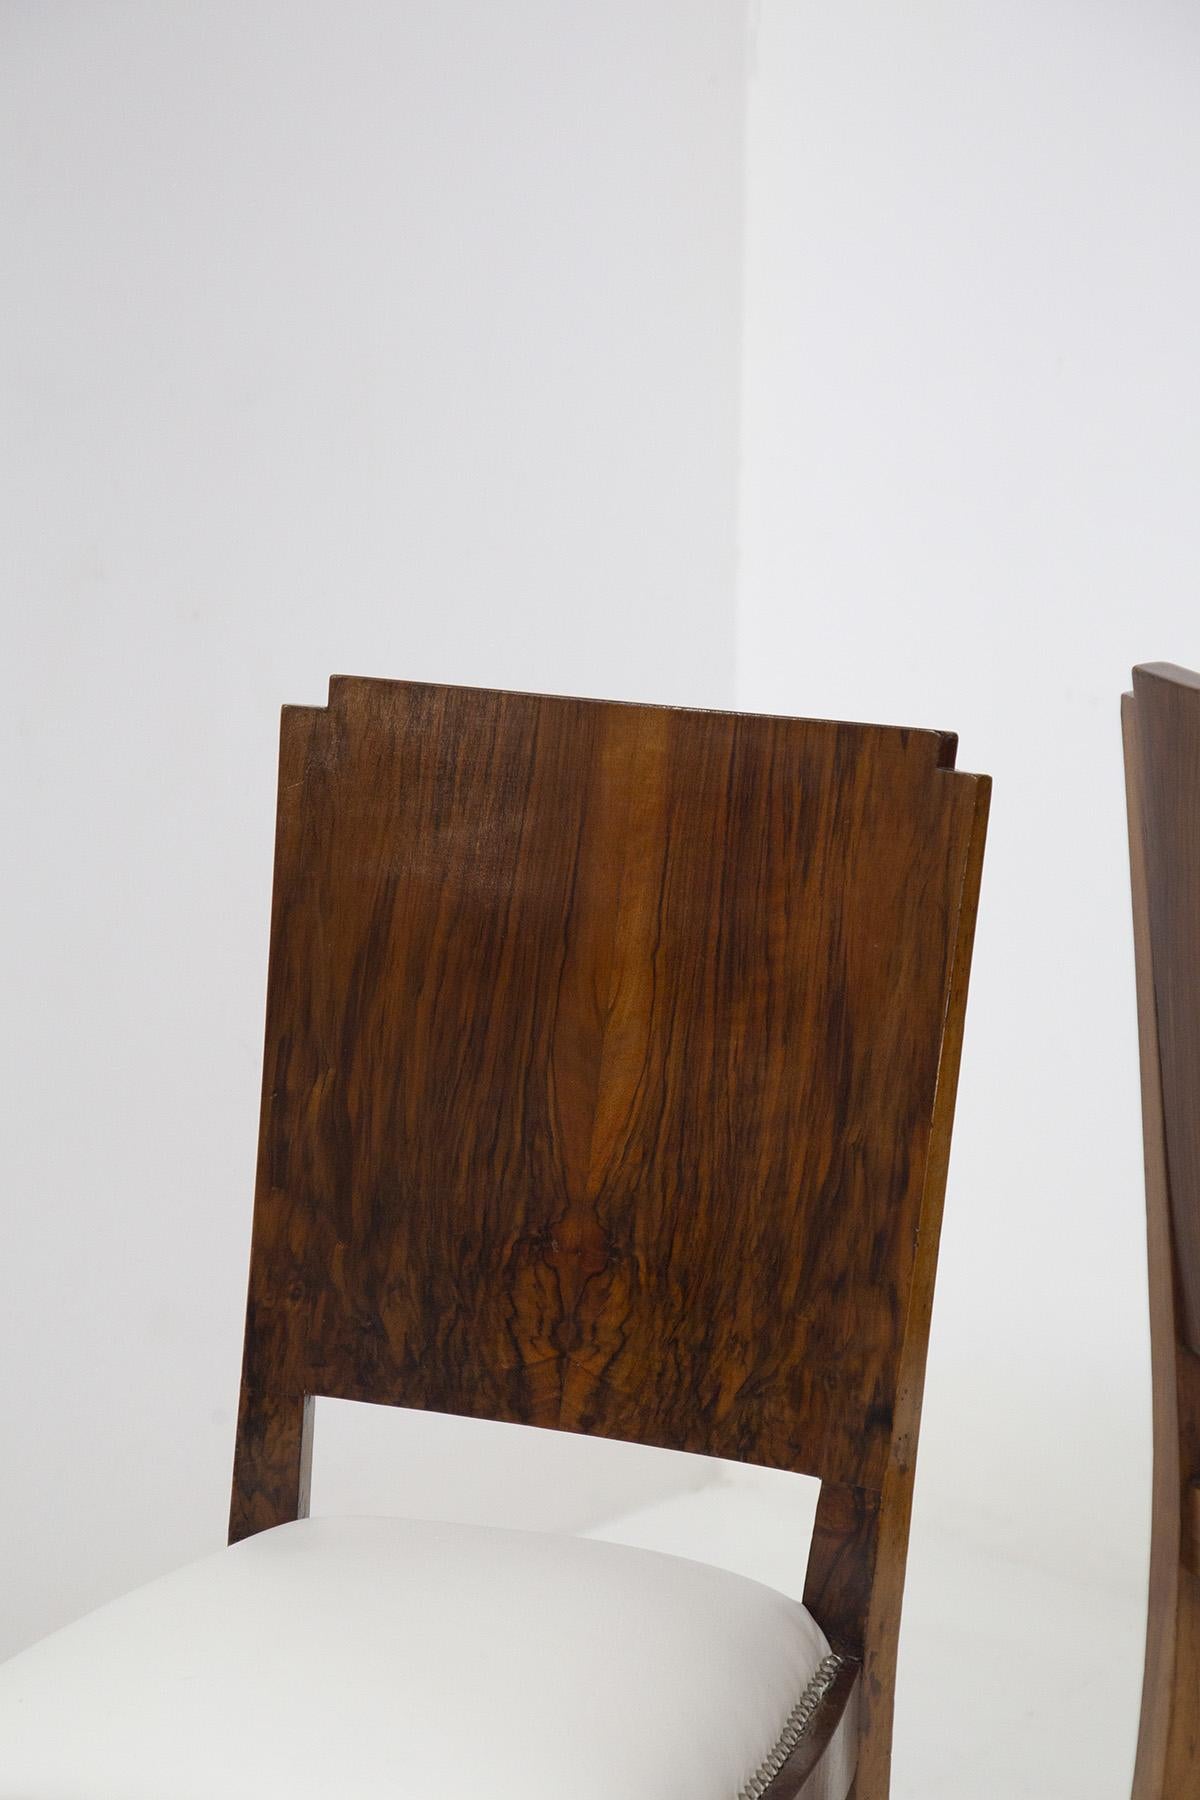 Belle paire de chaises en bois conçues et produites dans les années 1920 par un excellent fabricant italien.
Les chaises ont un cadre porteur entièrement en bois de noyer clair, qui a été très bien entretenu.
Les pieds de support sont au nombre de